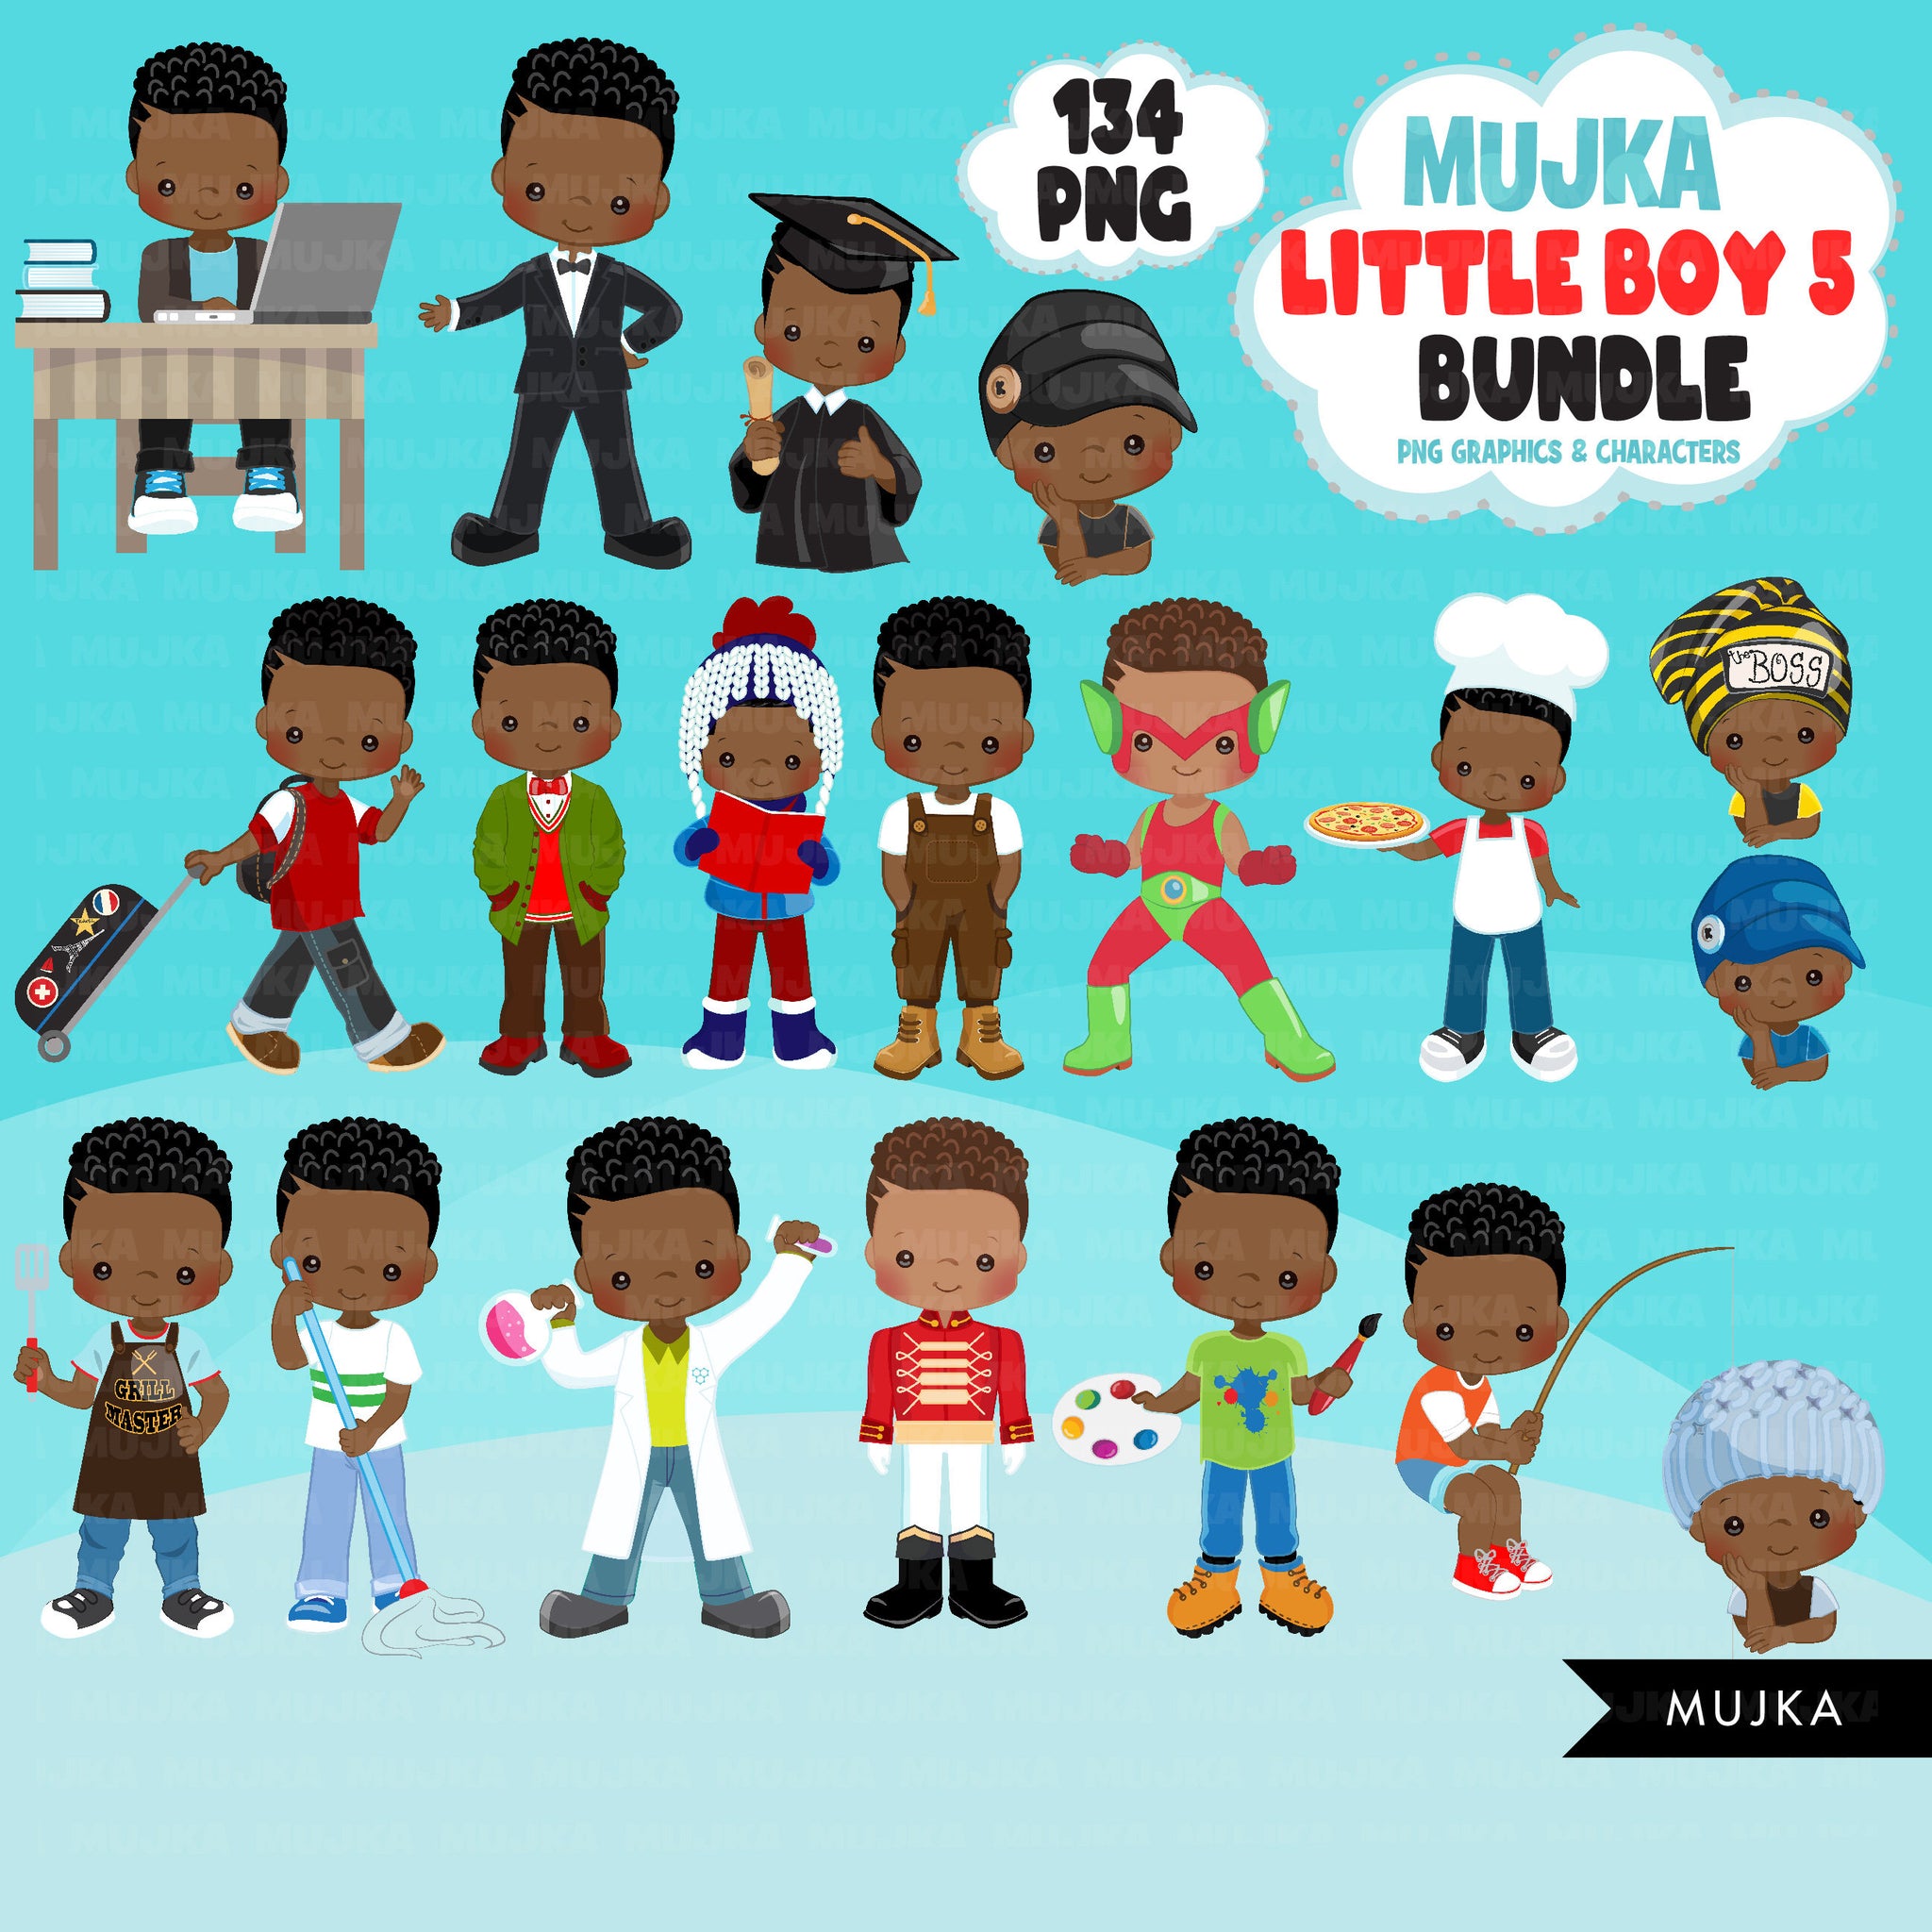 Black boy png Bundle, Black boy magic, black boy art, little boy digital sticker, cute black boy bundle, planner stickers, afro birthday boy